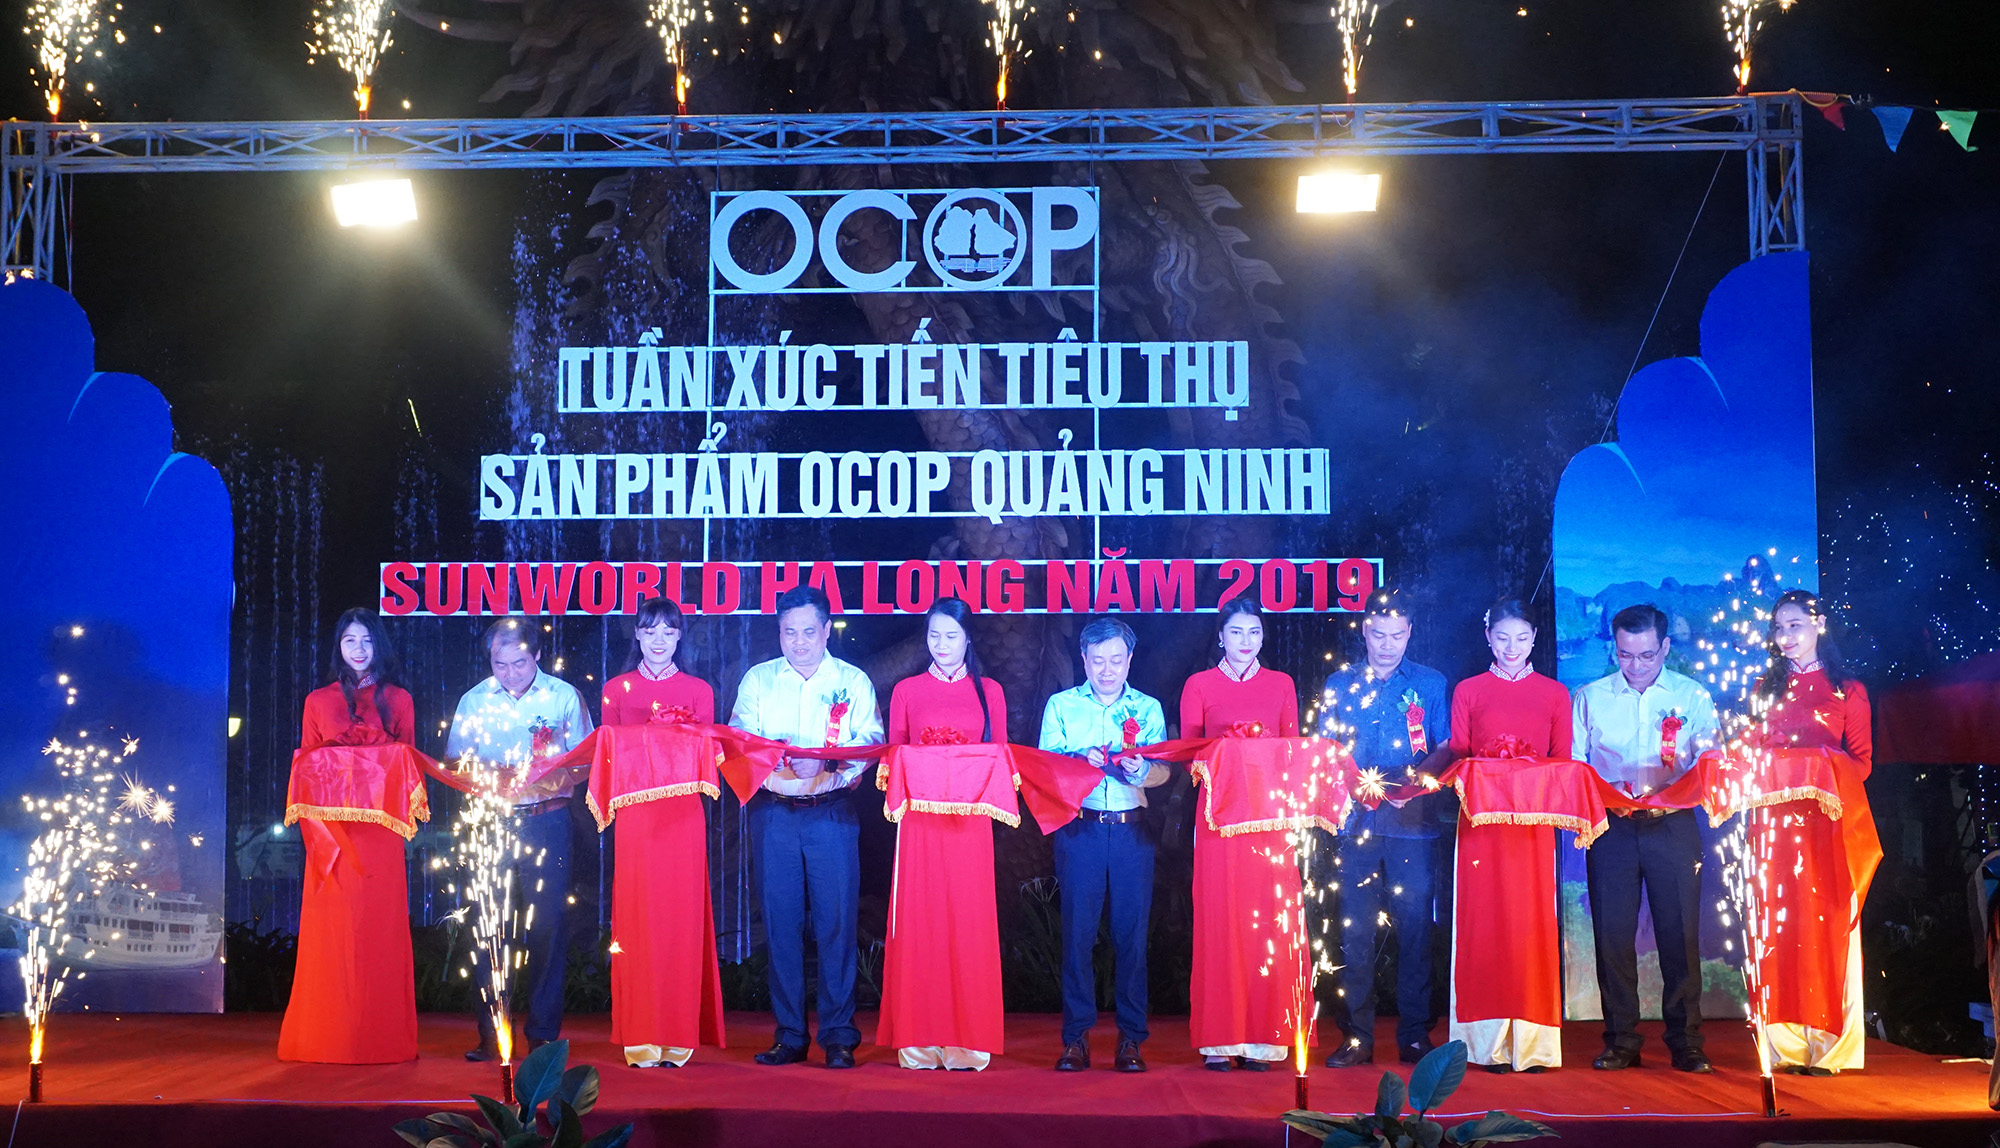 Các đại biểu cắt băng khai mạc Tuần Xúc tiến tiêu thụ sản phẩm OCOP Quảng Ninh  - Sun World Hạ Long 2019.